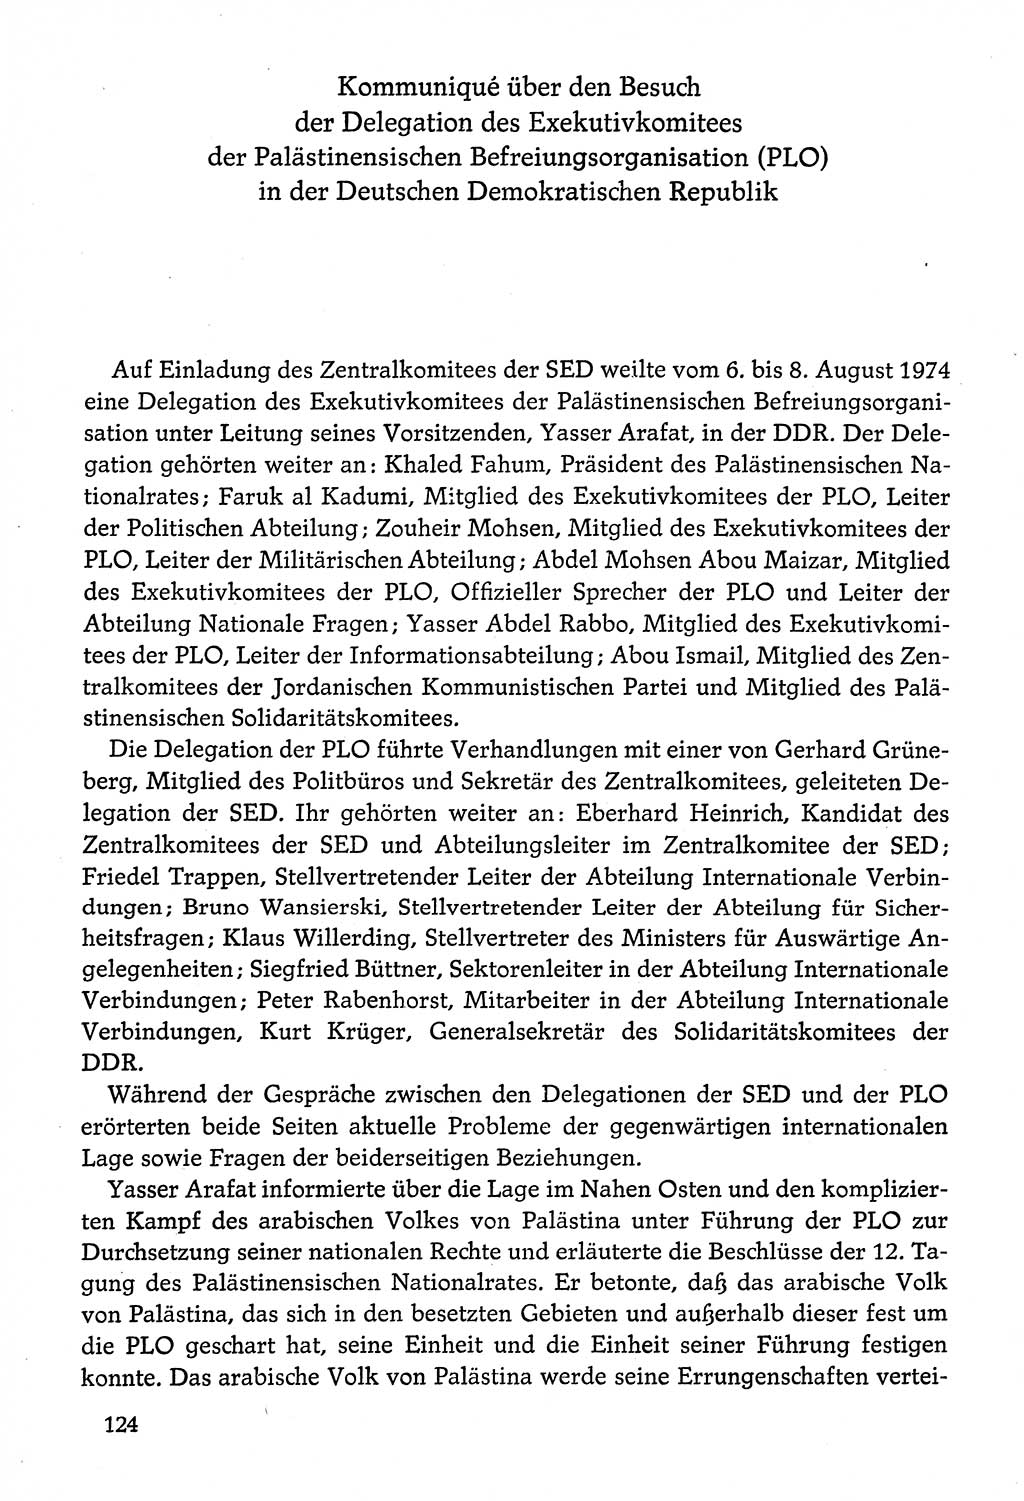 Dokumente der Sozialistischen Einheitspartei Deutschlands (SED) [Deutsche Demokratische Republik (DDR)] 1974-1975, Seite 124 (Dok. SED DDR 1978, Bd. ⅩⅤ, S. 124)